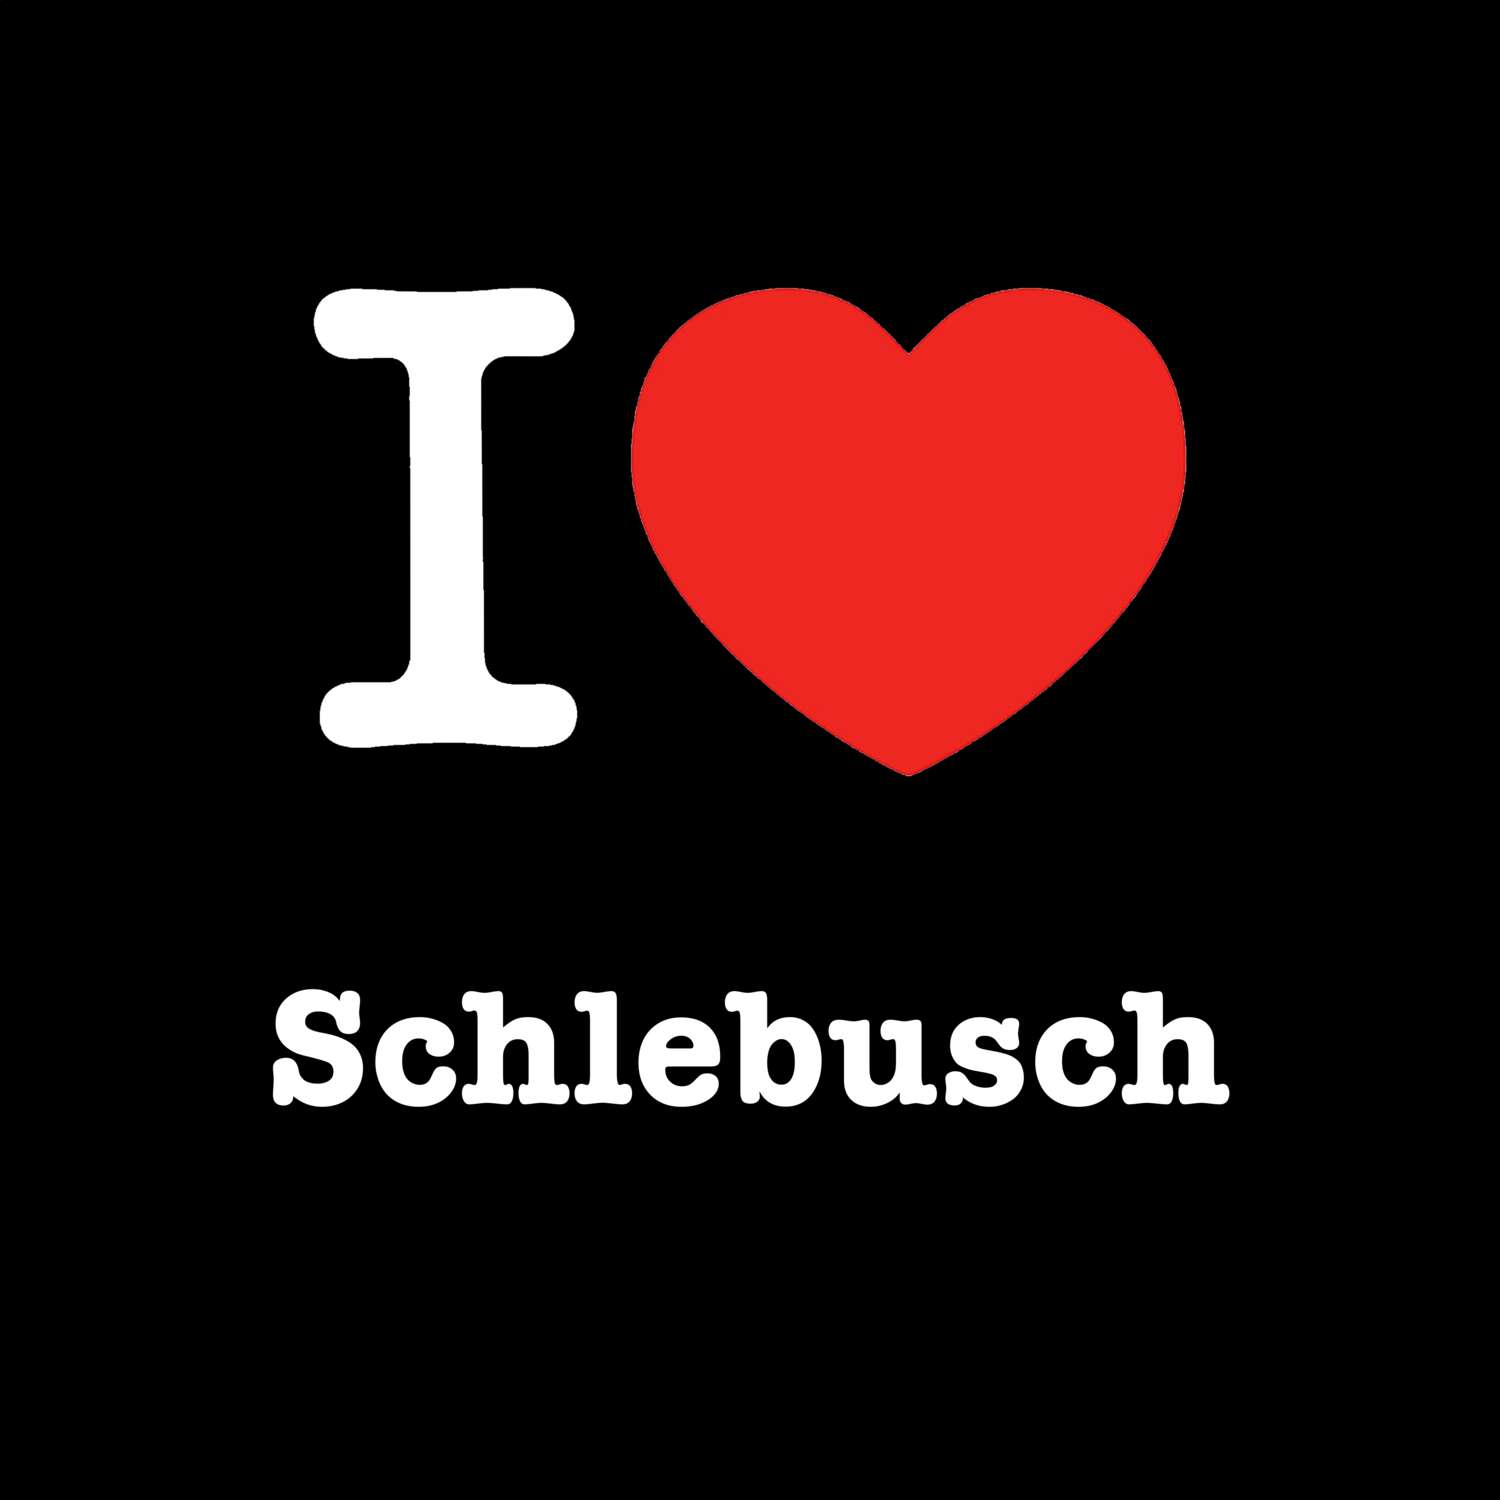 Schlebusch T-Shirt »I love«